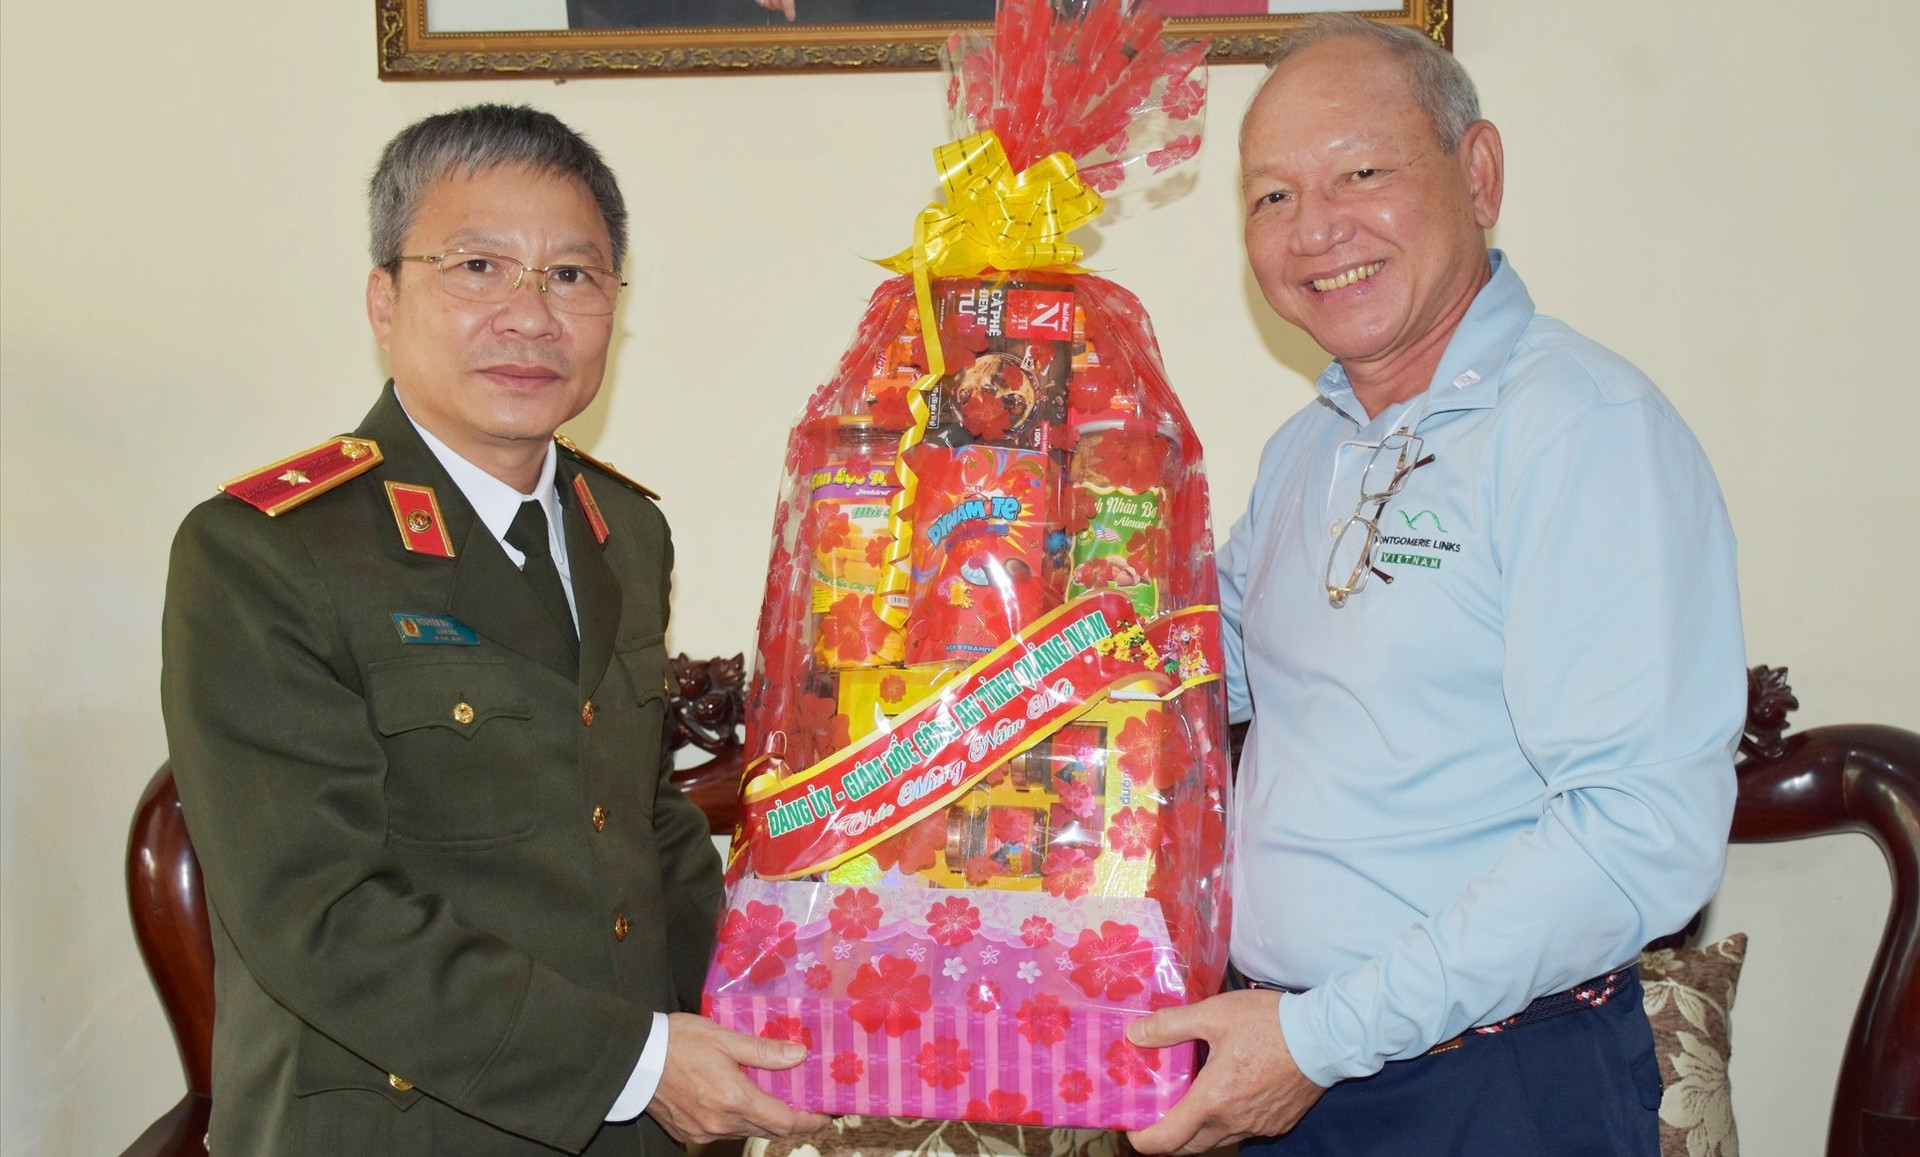 Thiếu tướng Nguyễn Đức Dũng - Giám đốc Công an tỉnh thăm, tặng quà chúc Tết các đồng chí nguyên lãnh đạo Công an tỉnh. Ảnh: M.T